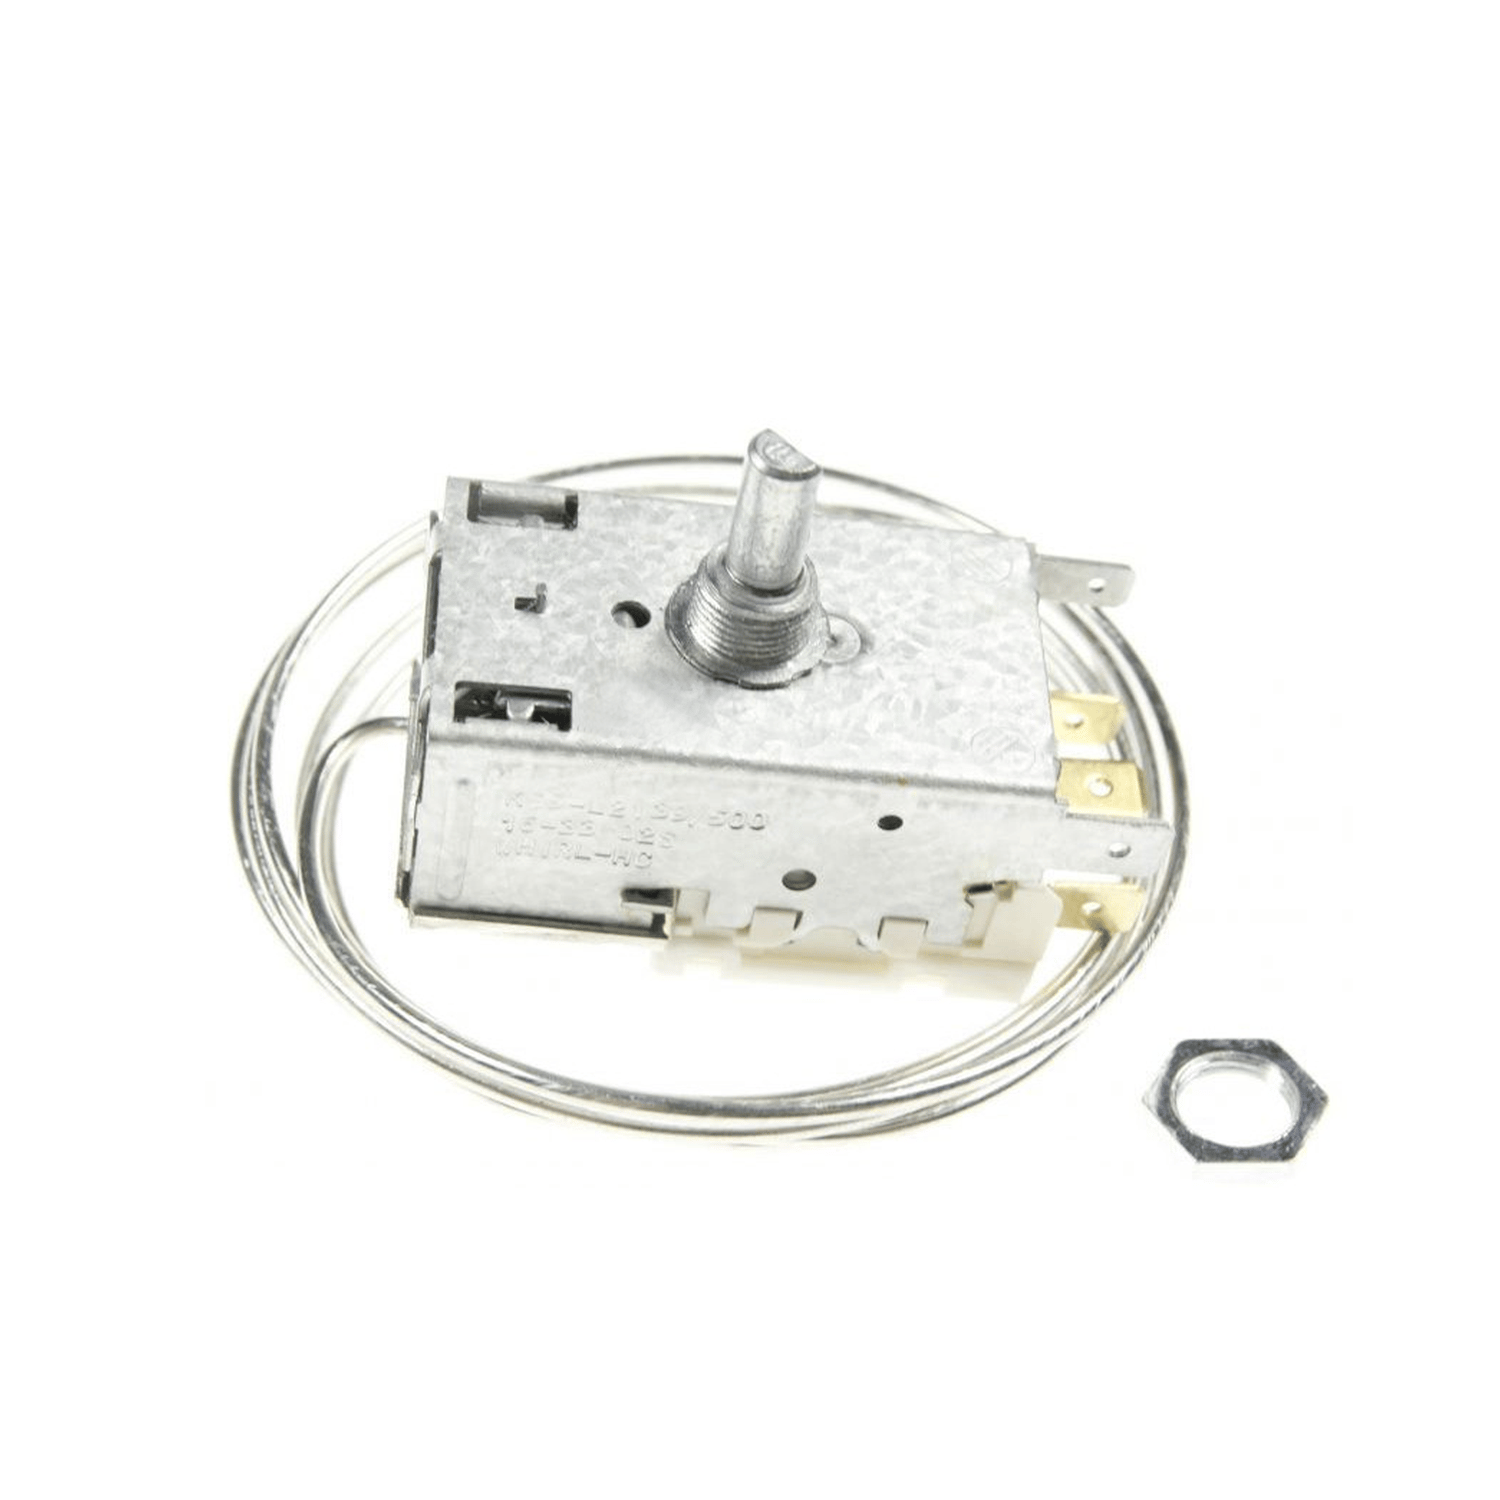 Thermostat Ranco K59-L2139500 pour réfrigérateur ROBERTSHAW, L 1530 mm, AMP 4,8 mm